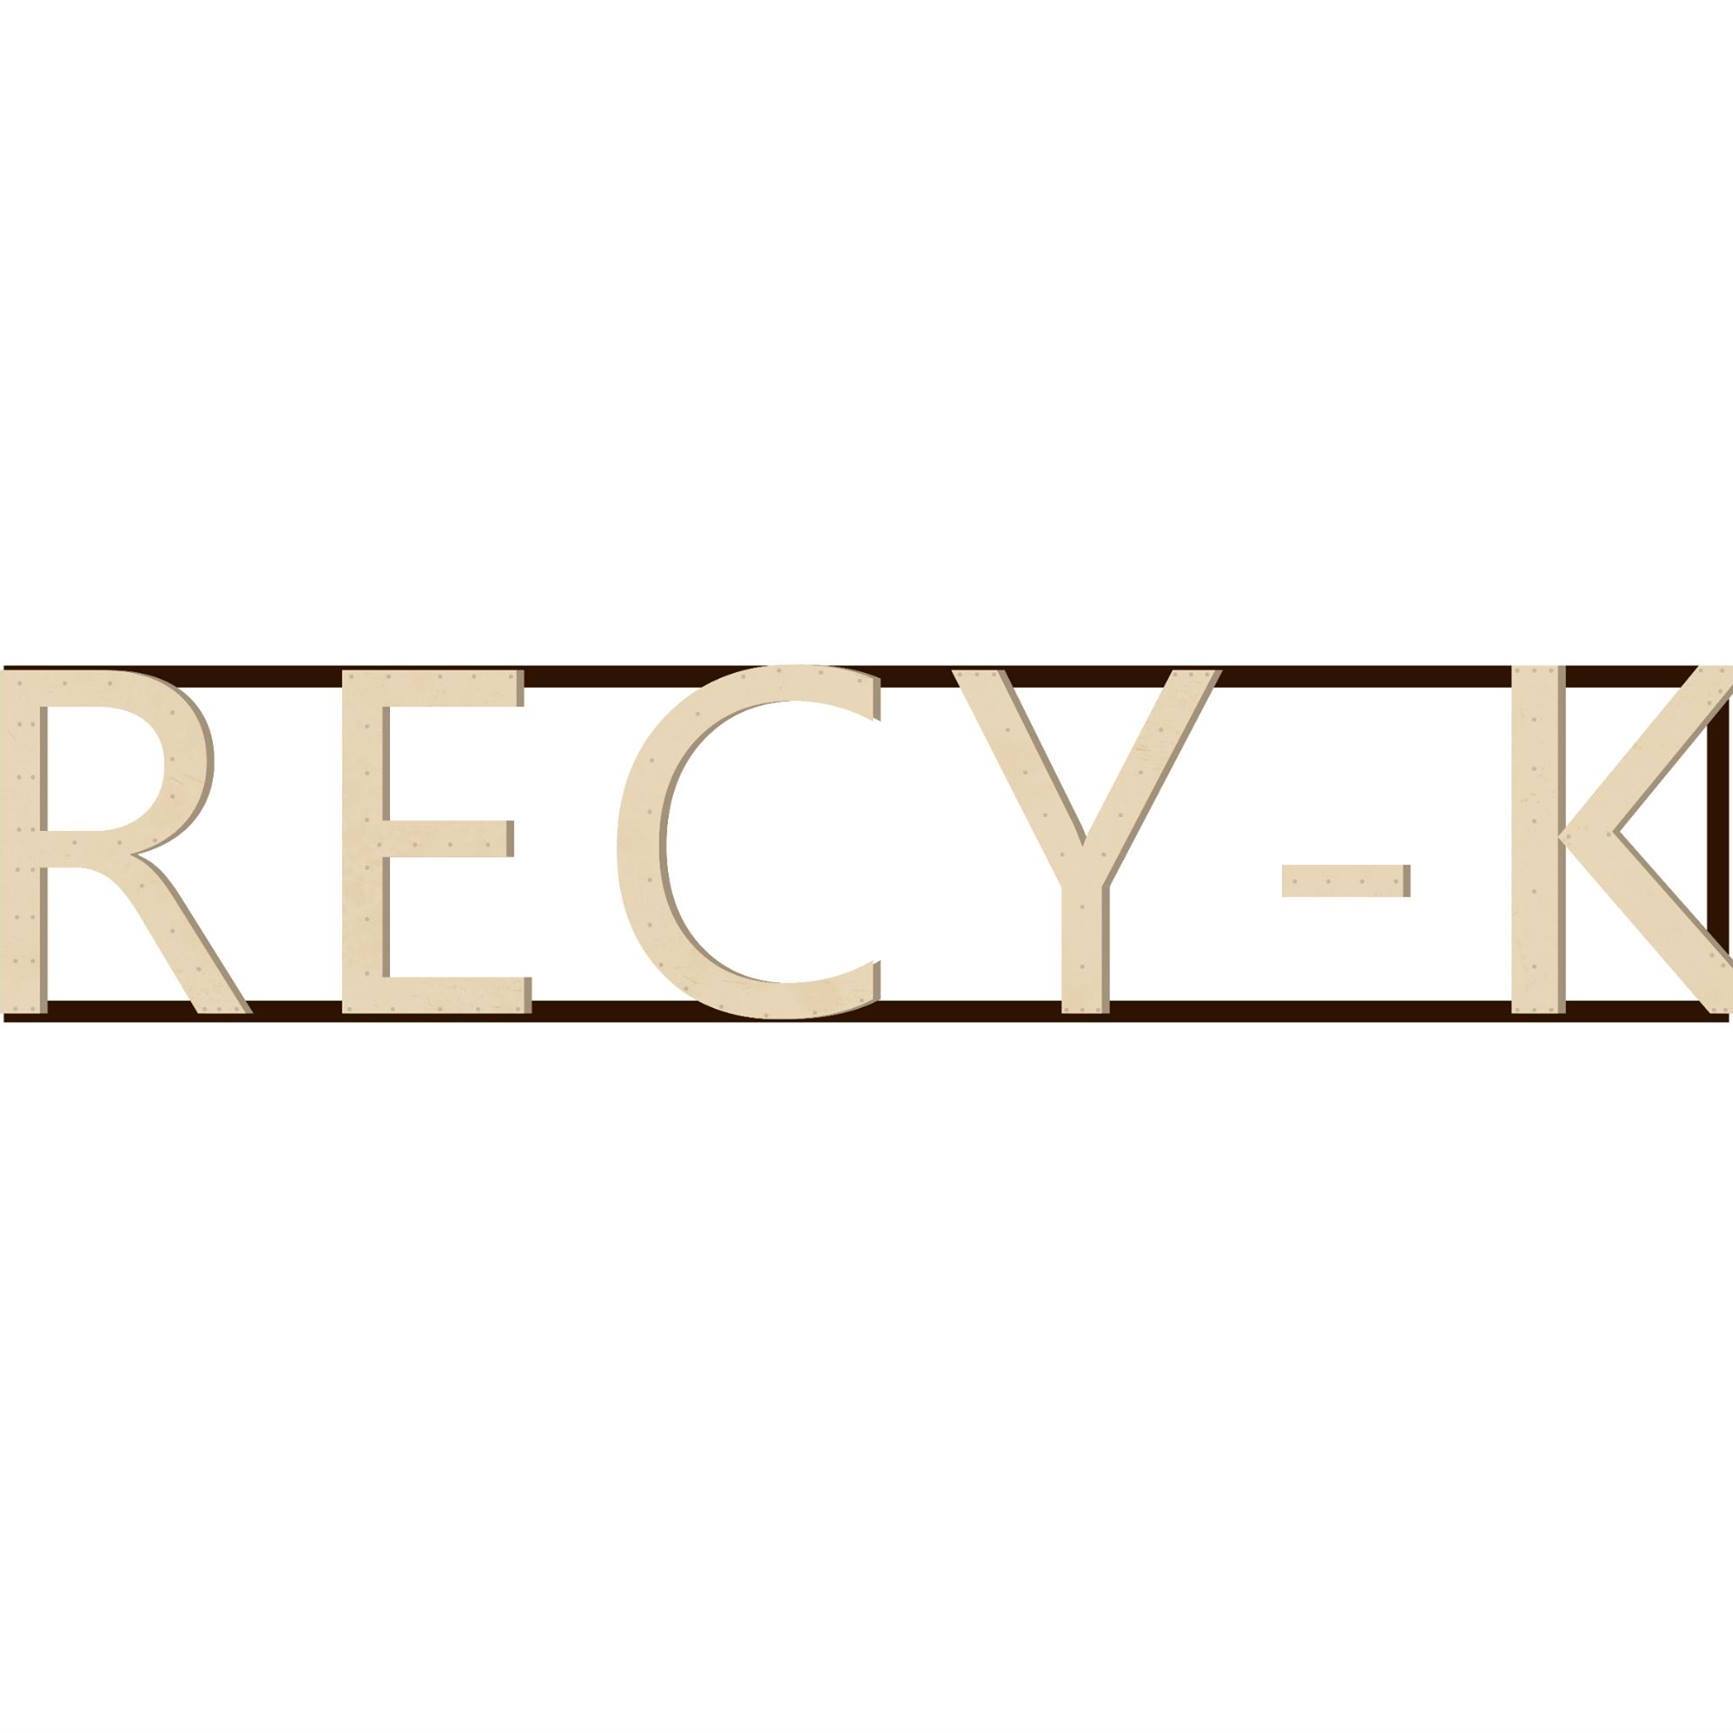 Recy-K